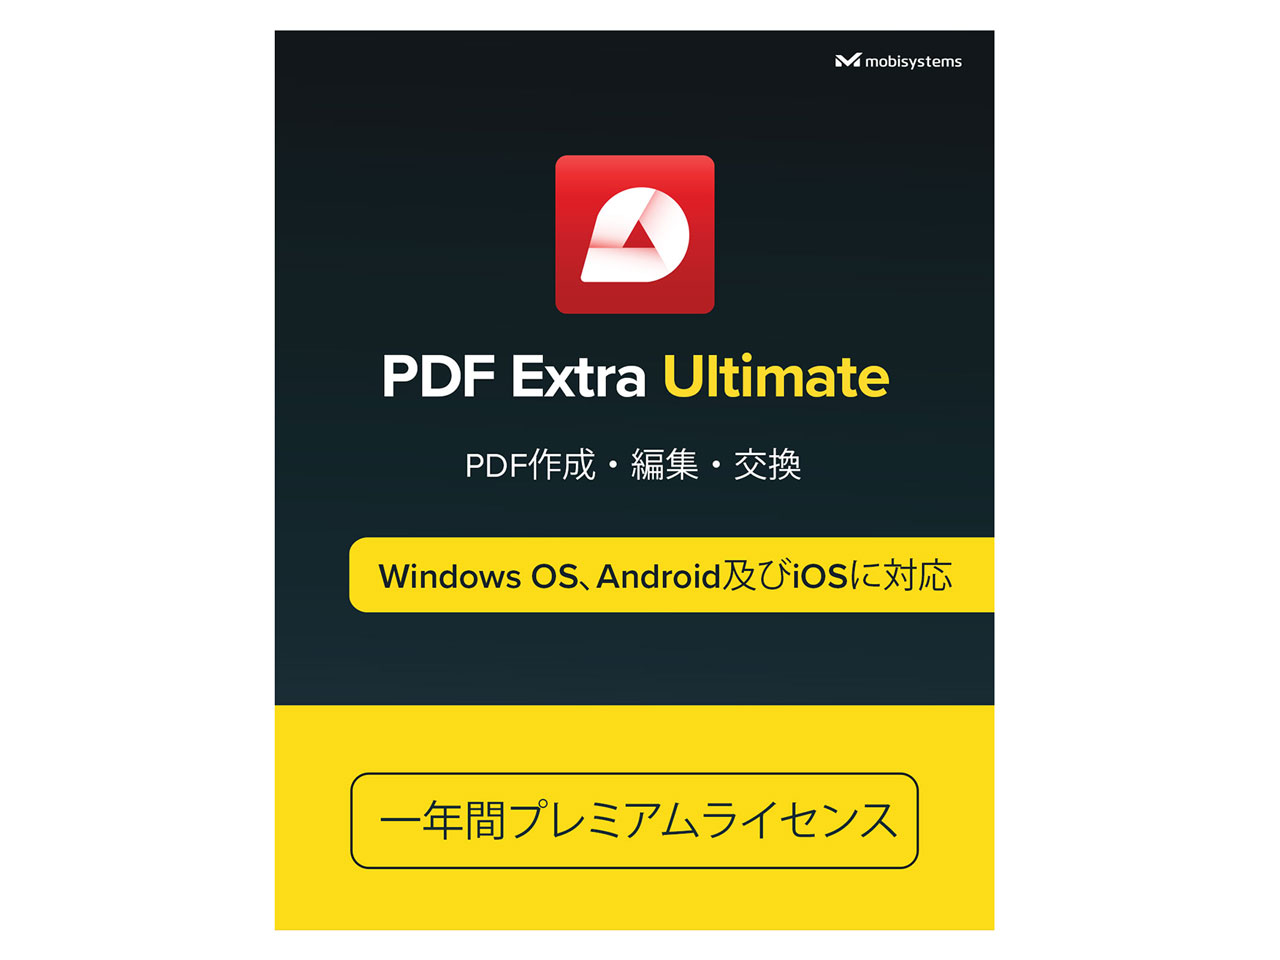 PDF Extra Premium 8.60.52836 download the last version for ios